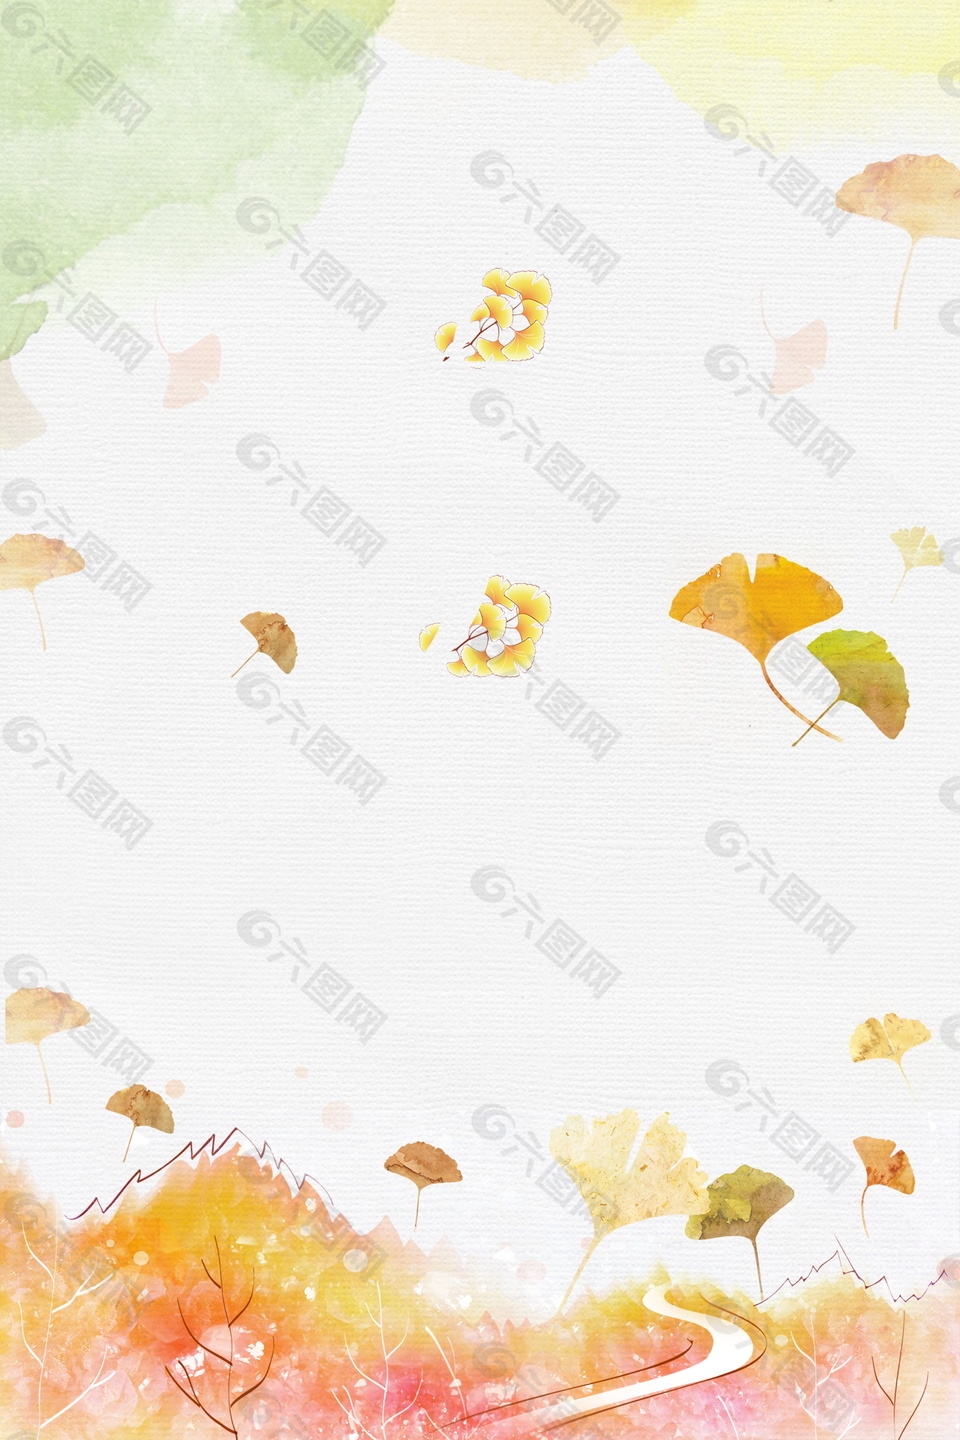 彩绘立秋主题银杏落叶背景